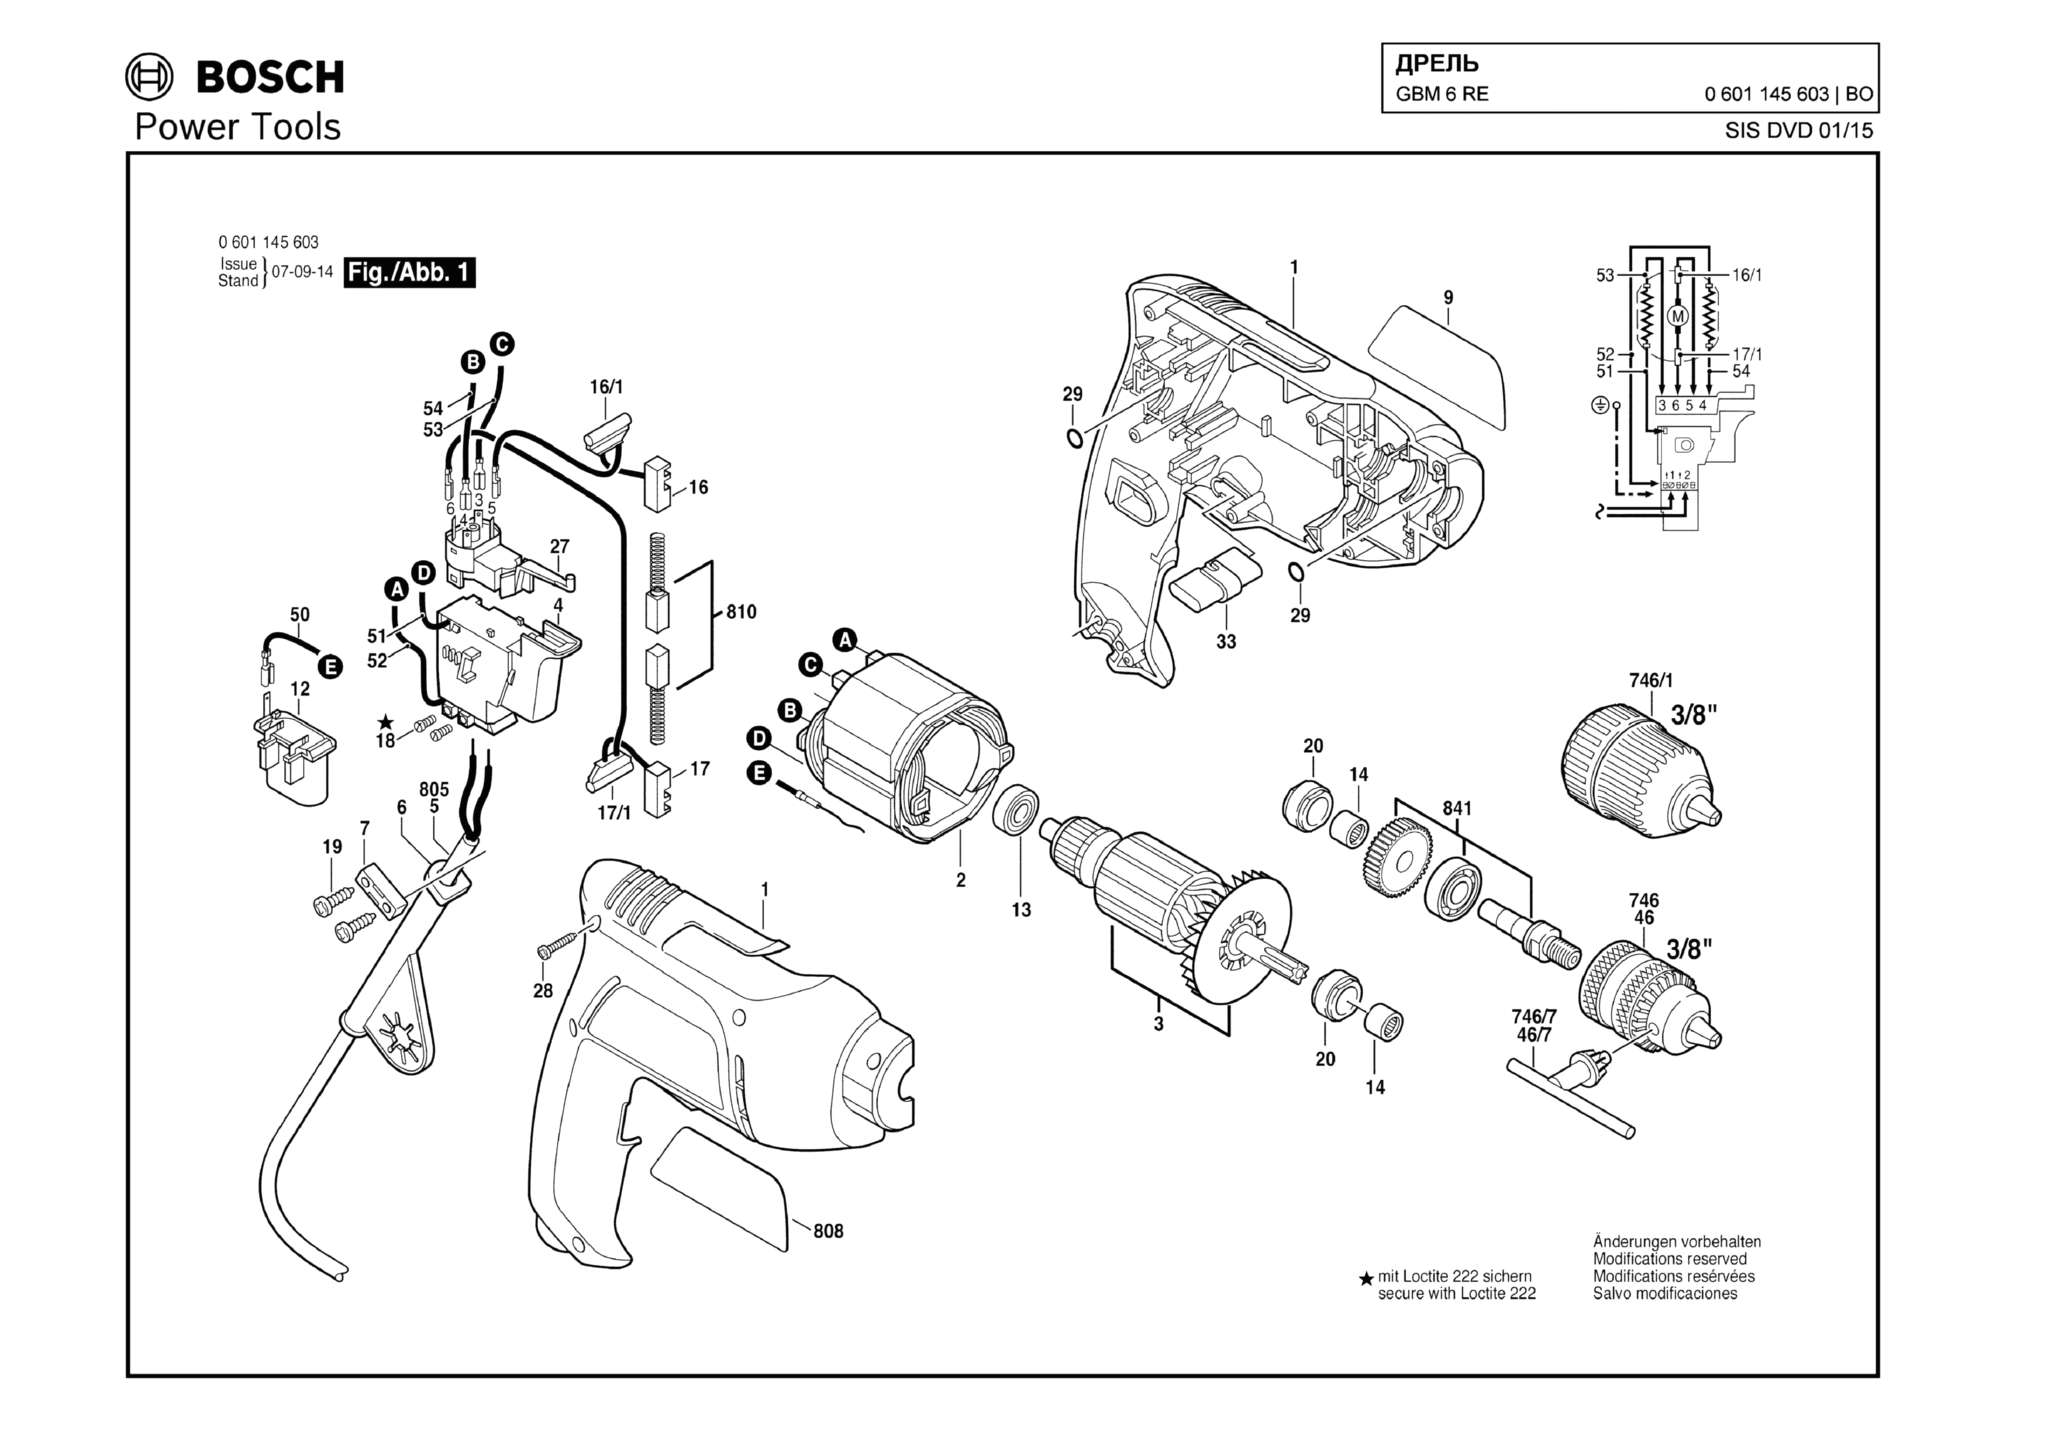 Запчасти, схема и деталировка Bosch GBM 6 RE (ТИП 0601145603)